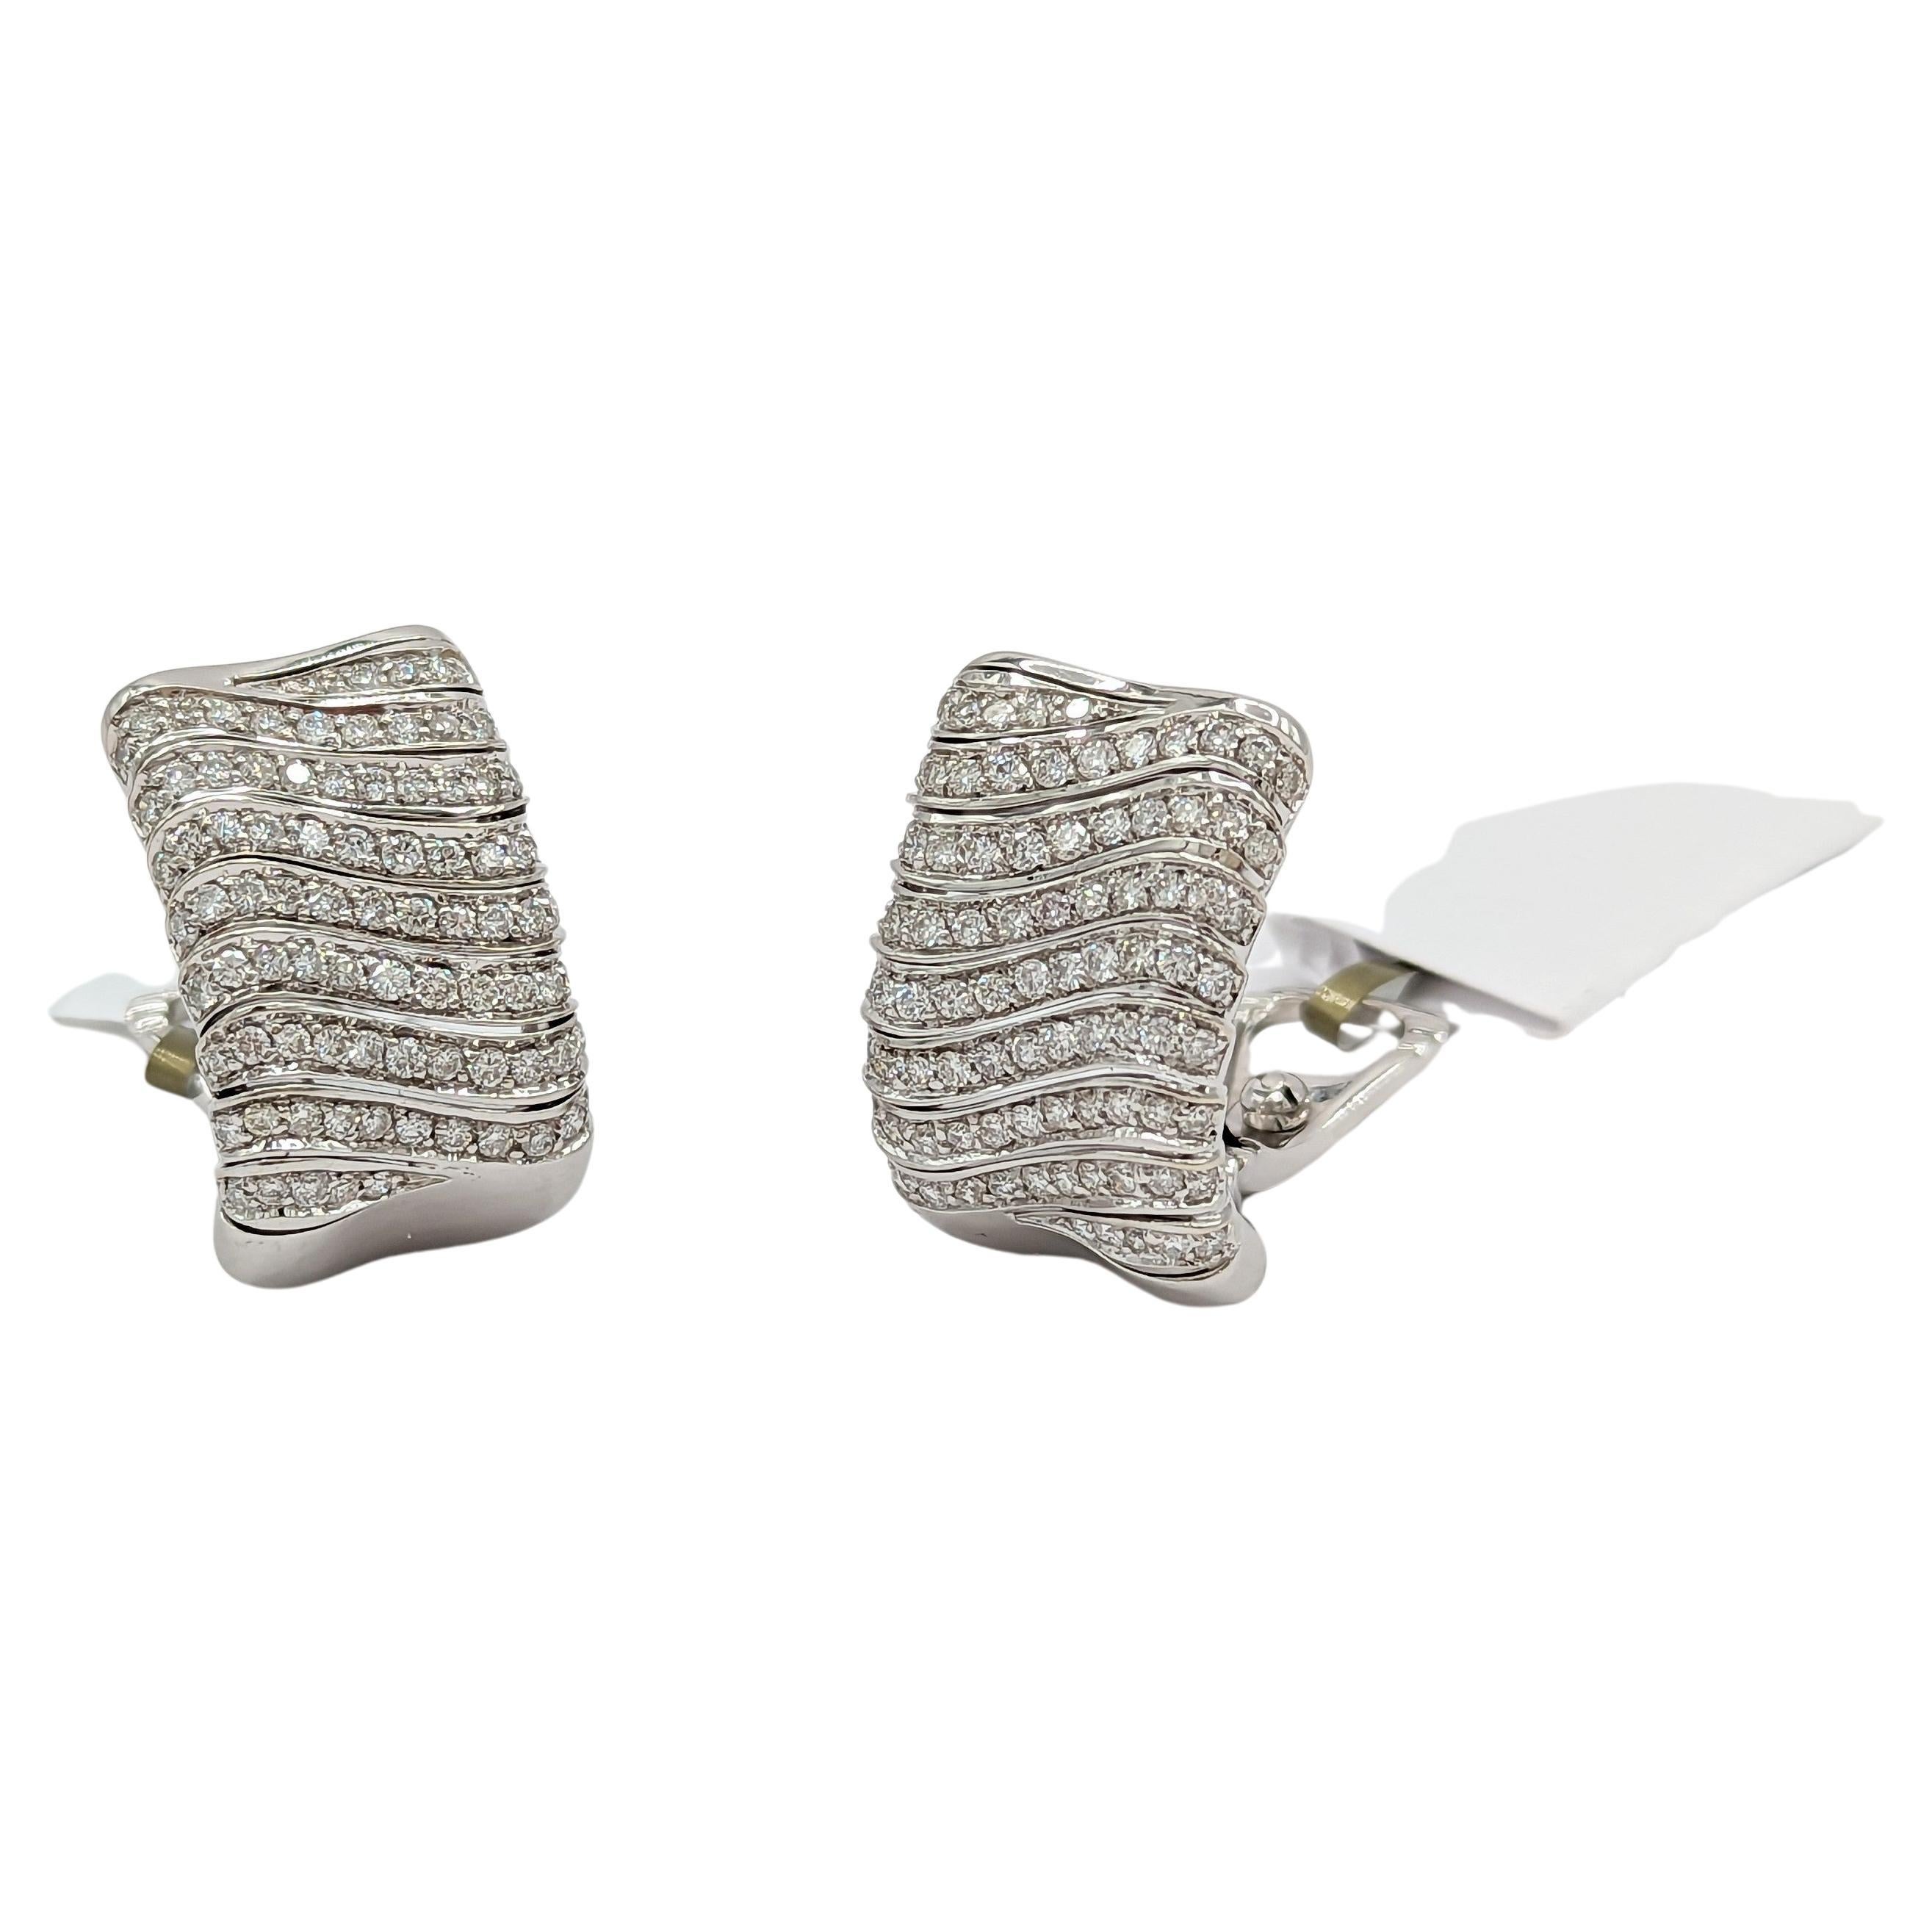 White Diamond Earrings in 18K White Gold